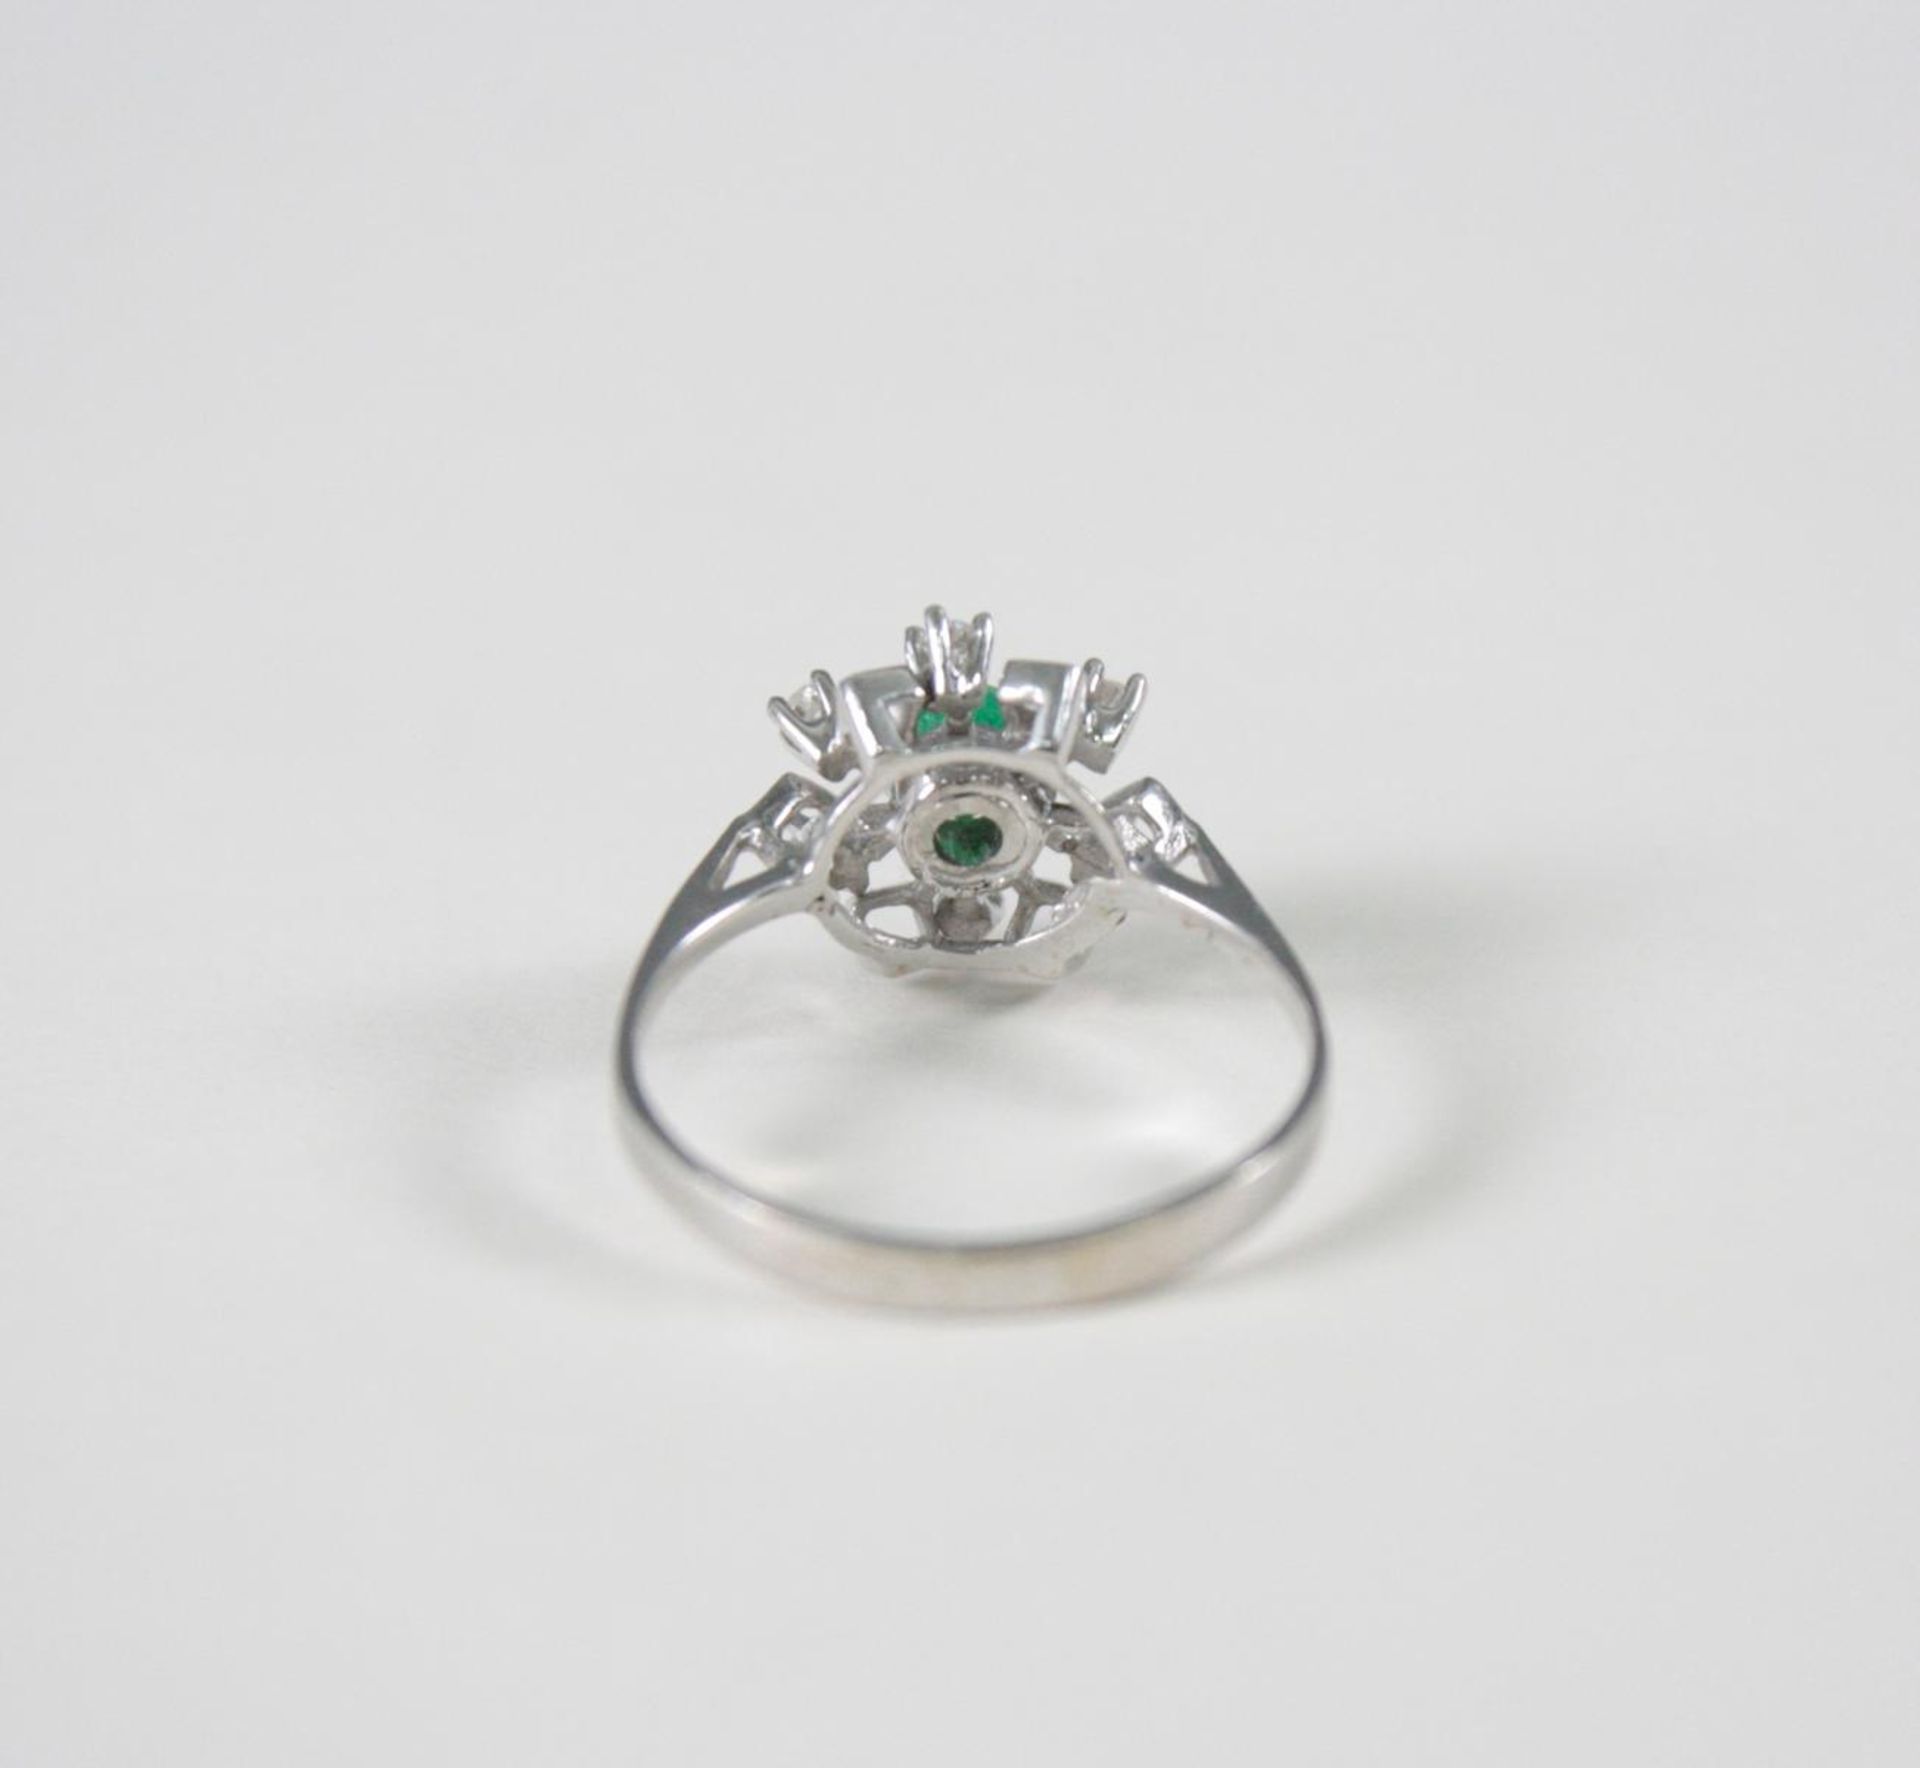 Damenring mit Smaragd und Diamanten, 14 Karat Weißgold1 Smaragd im Diamantschliff von ca 0,30 Karat, - Bild 3 aus 3